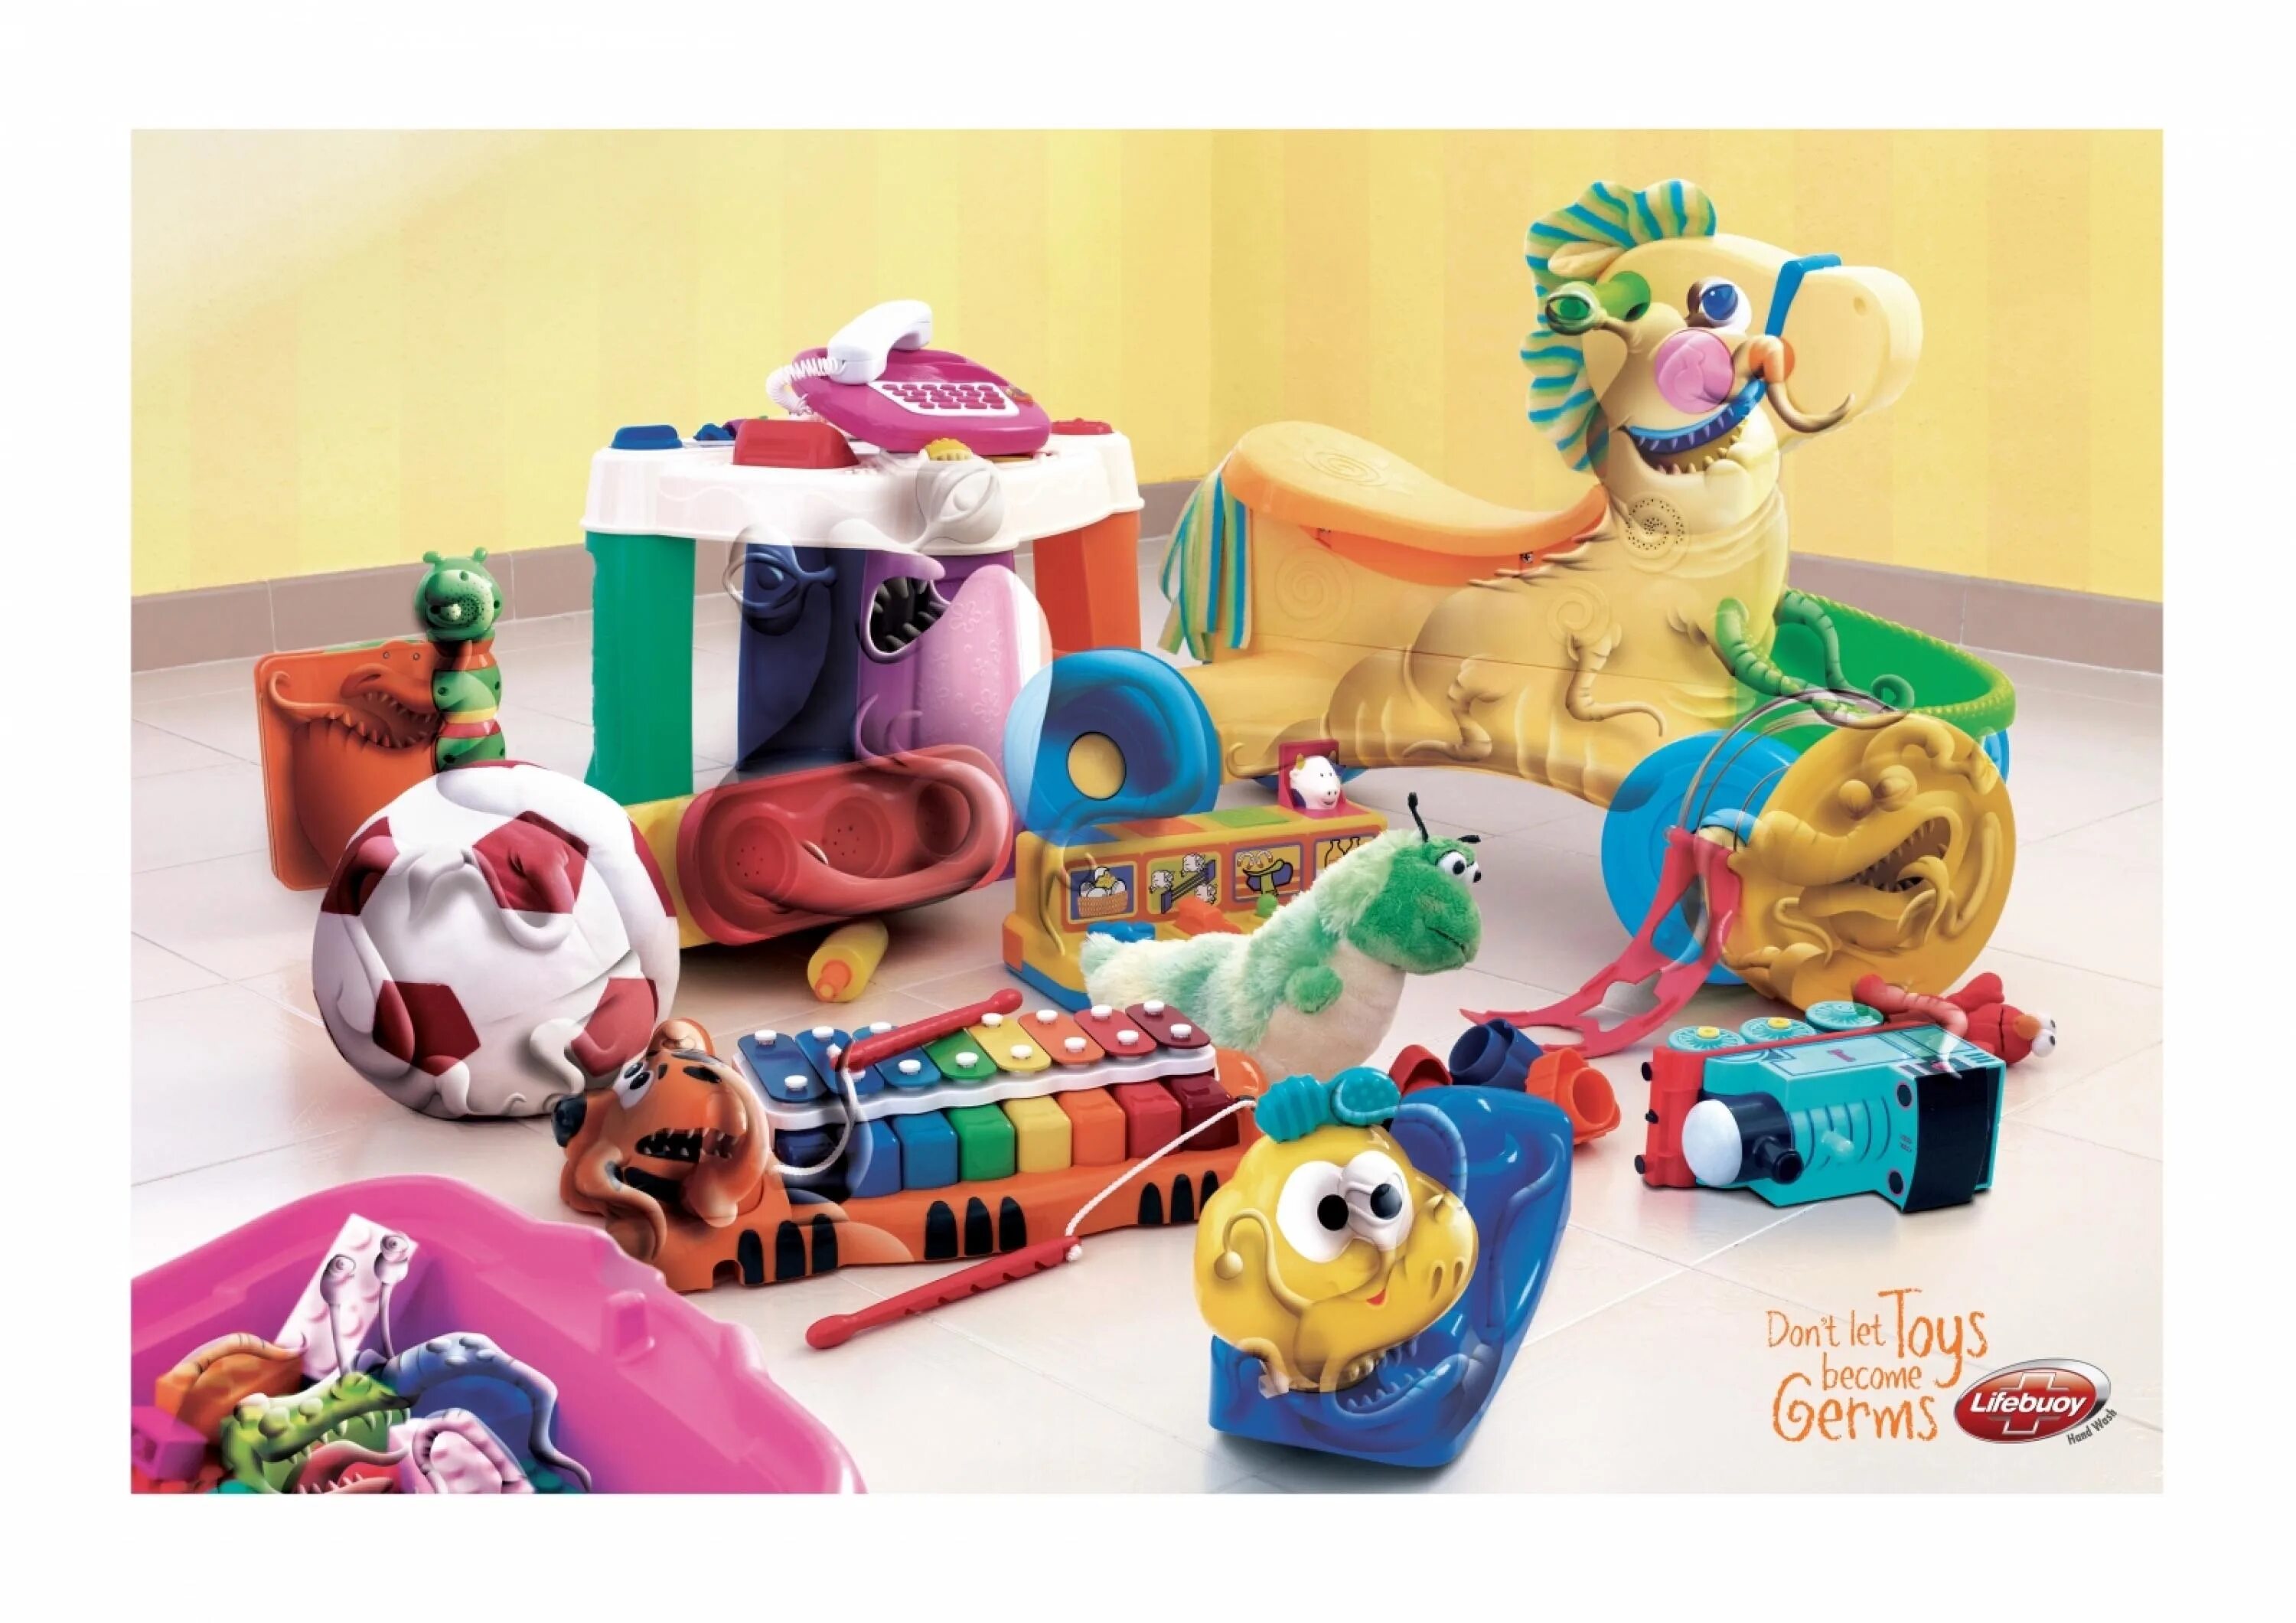 Рекламировать игрушки. Реклама игрушек. Реклама игрушек для детей. Детская реклама игрушек. Рекламаа игрушкт.